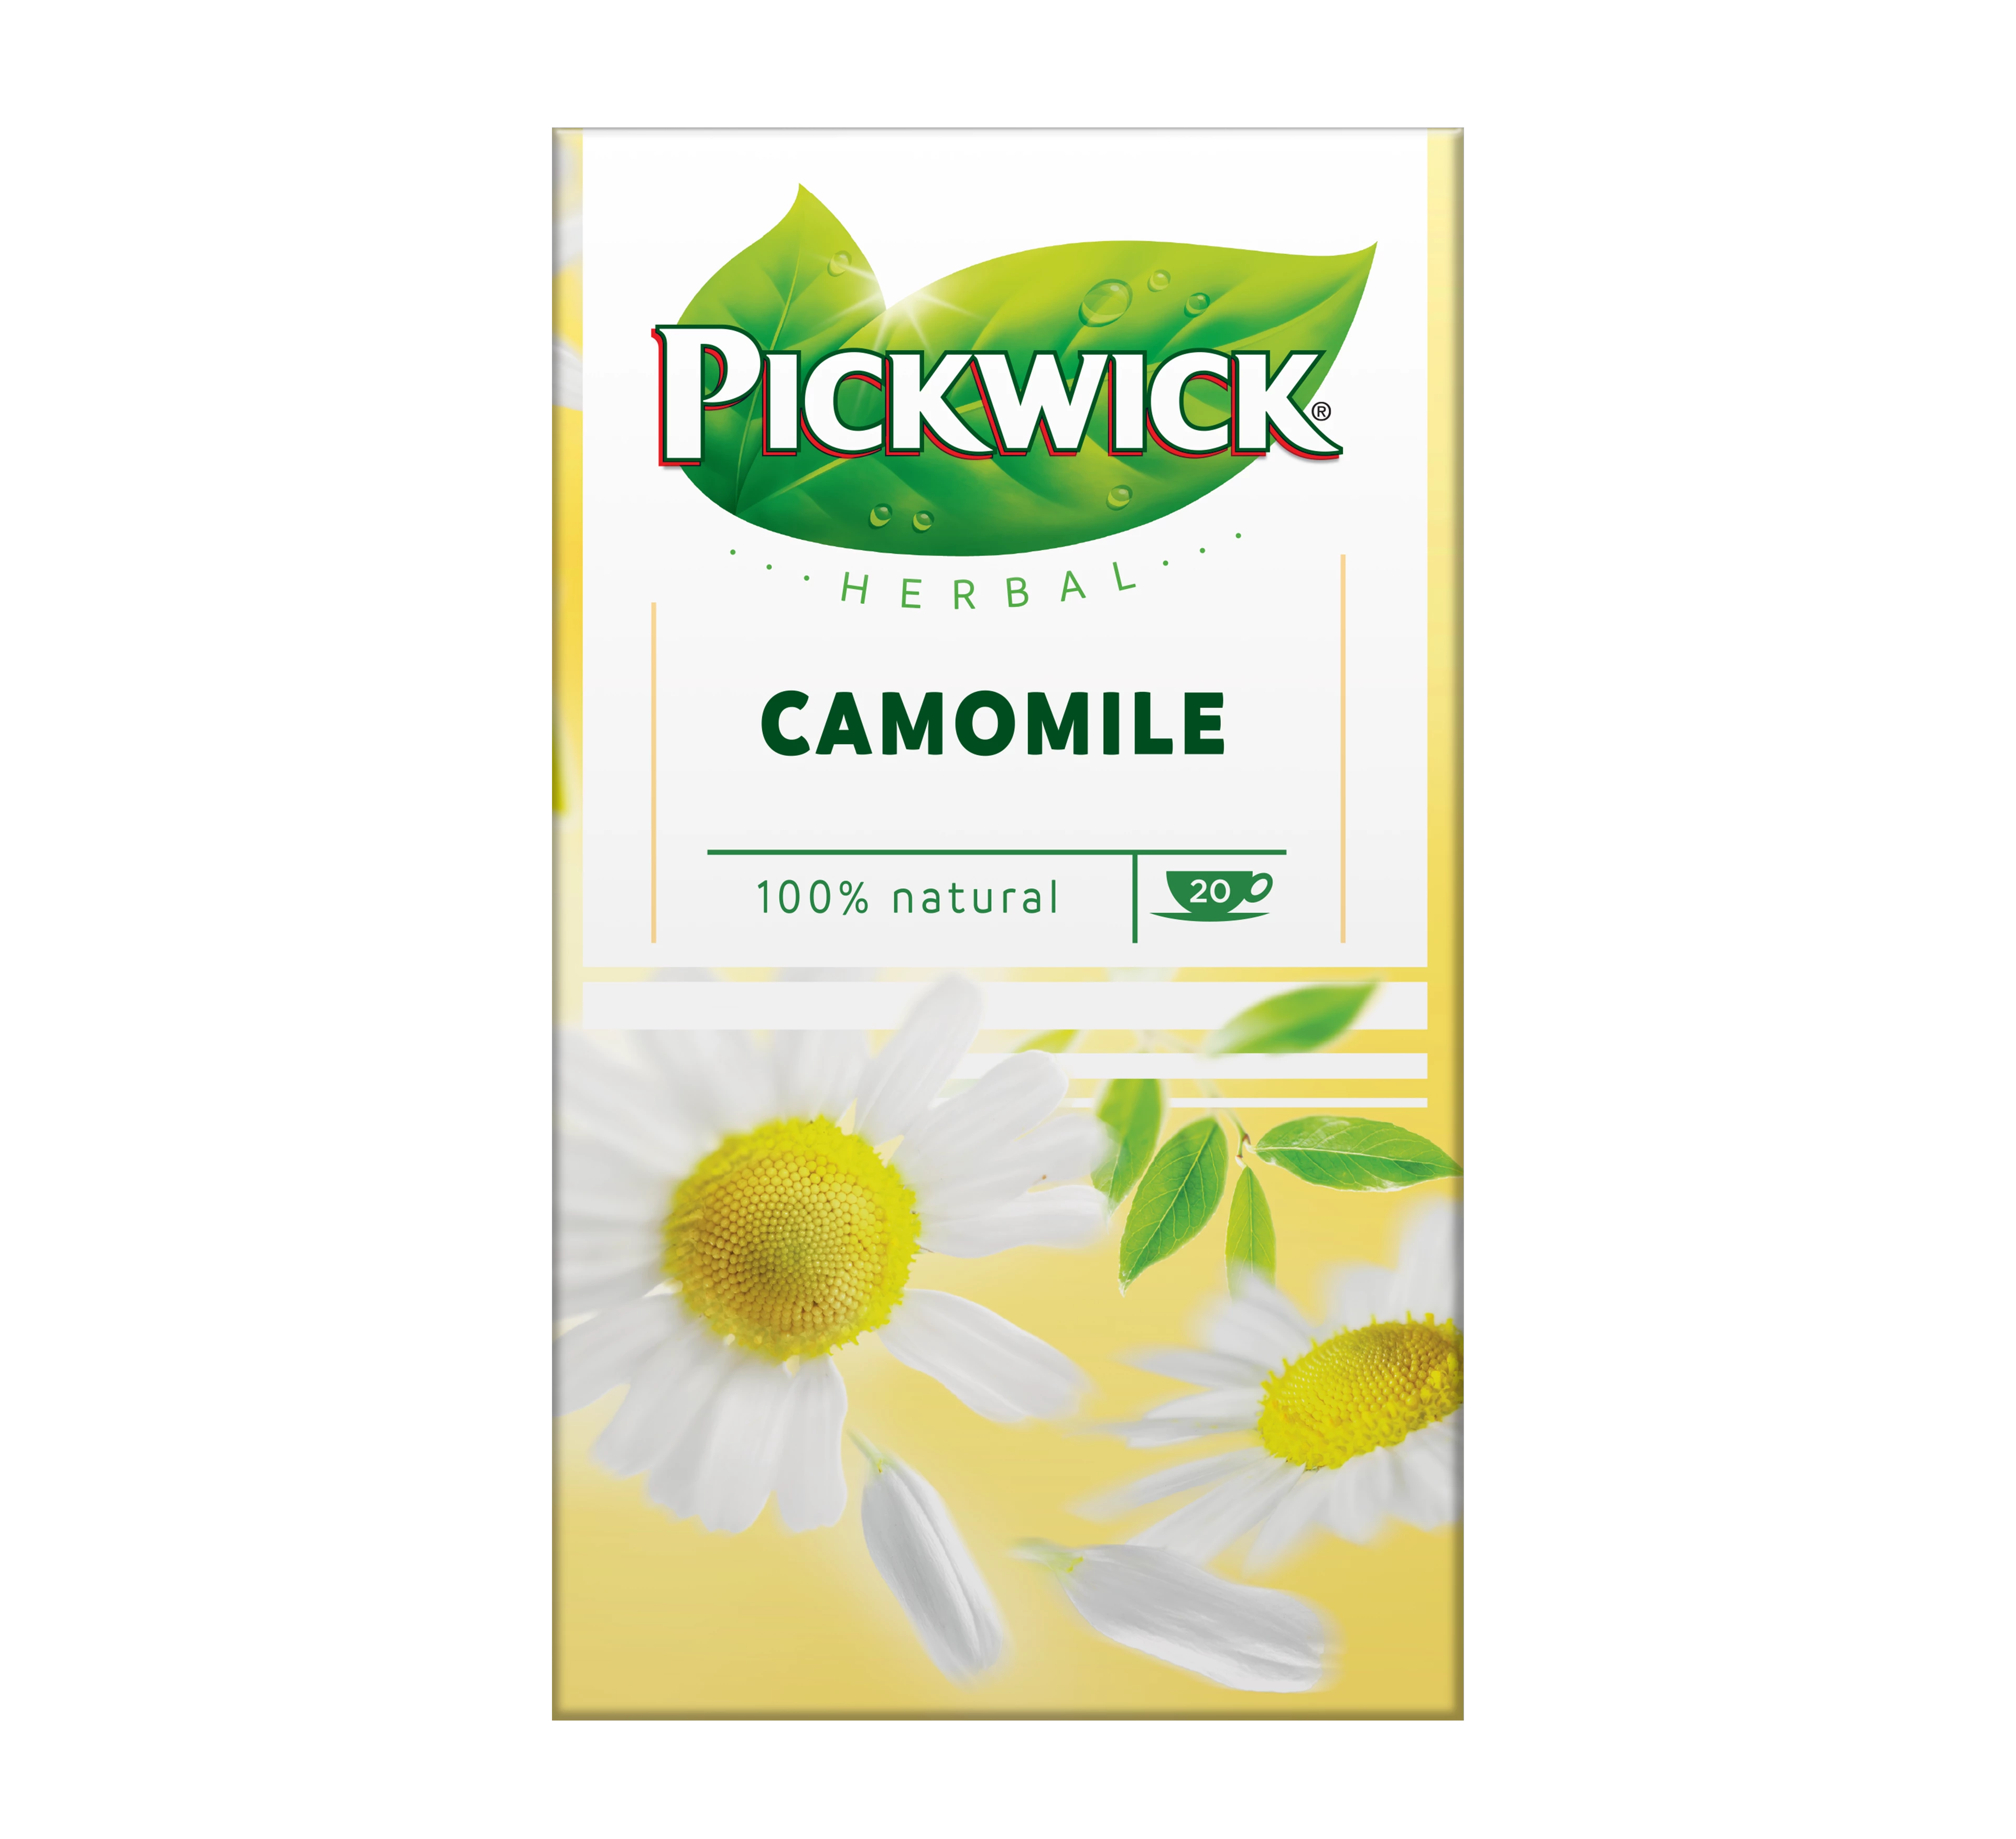 Pickwick herbal kamille packshot